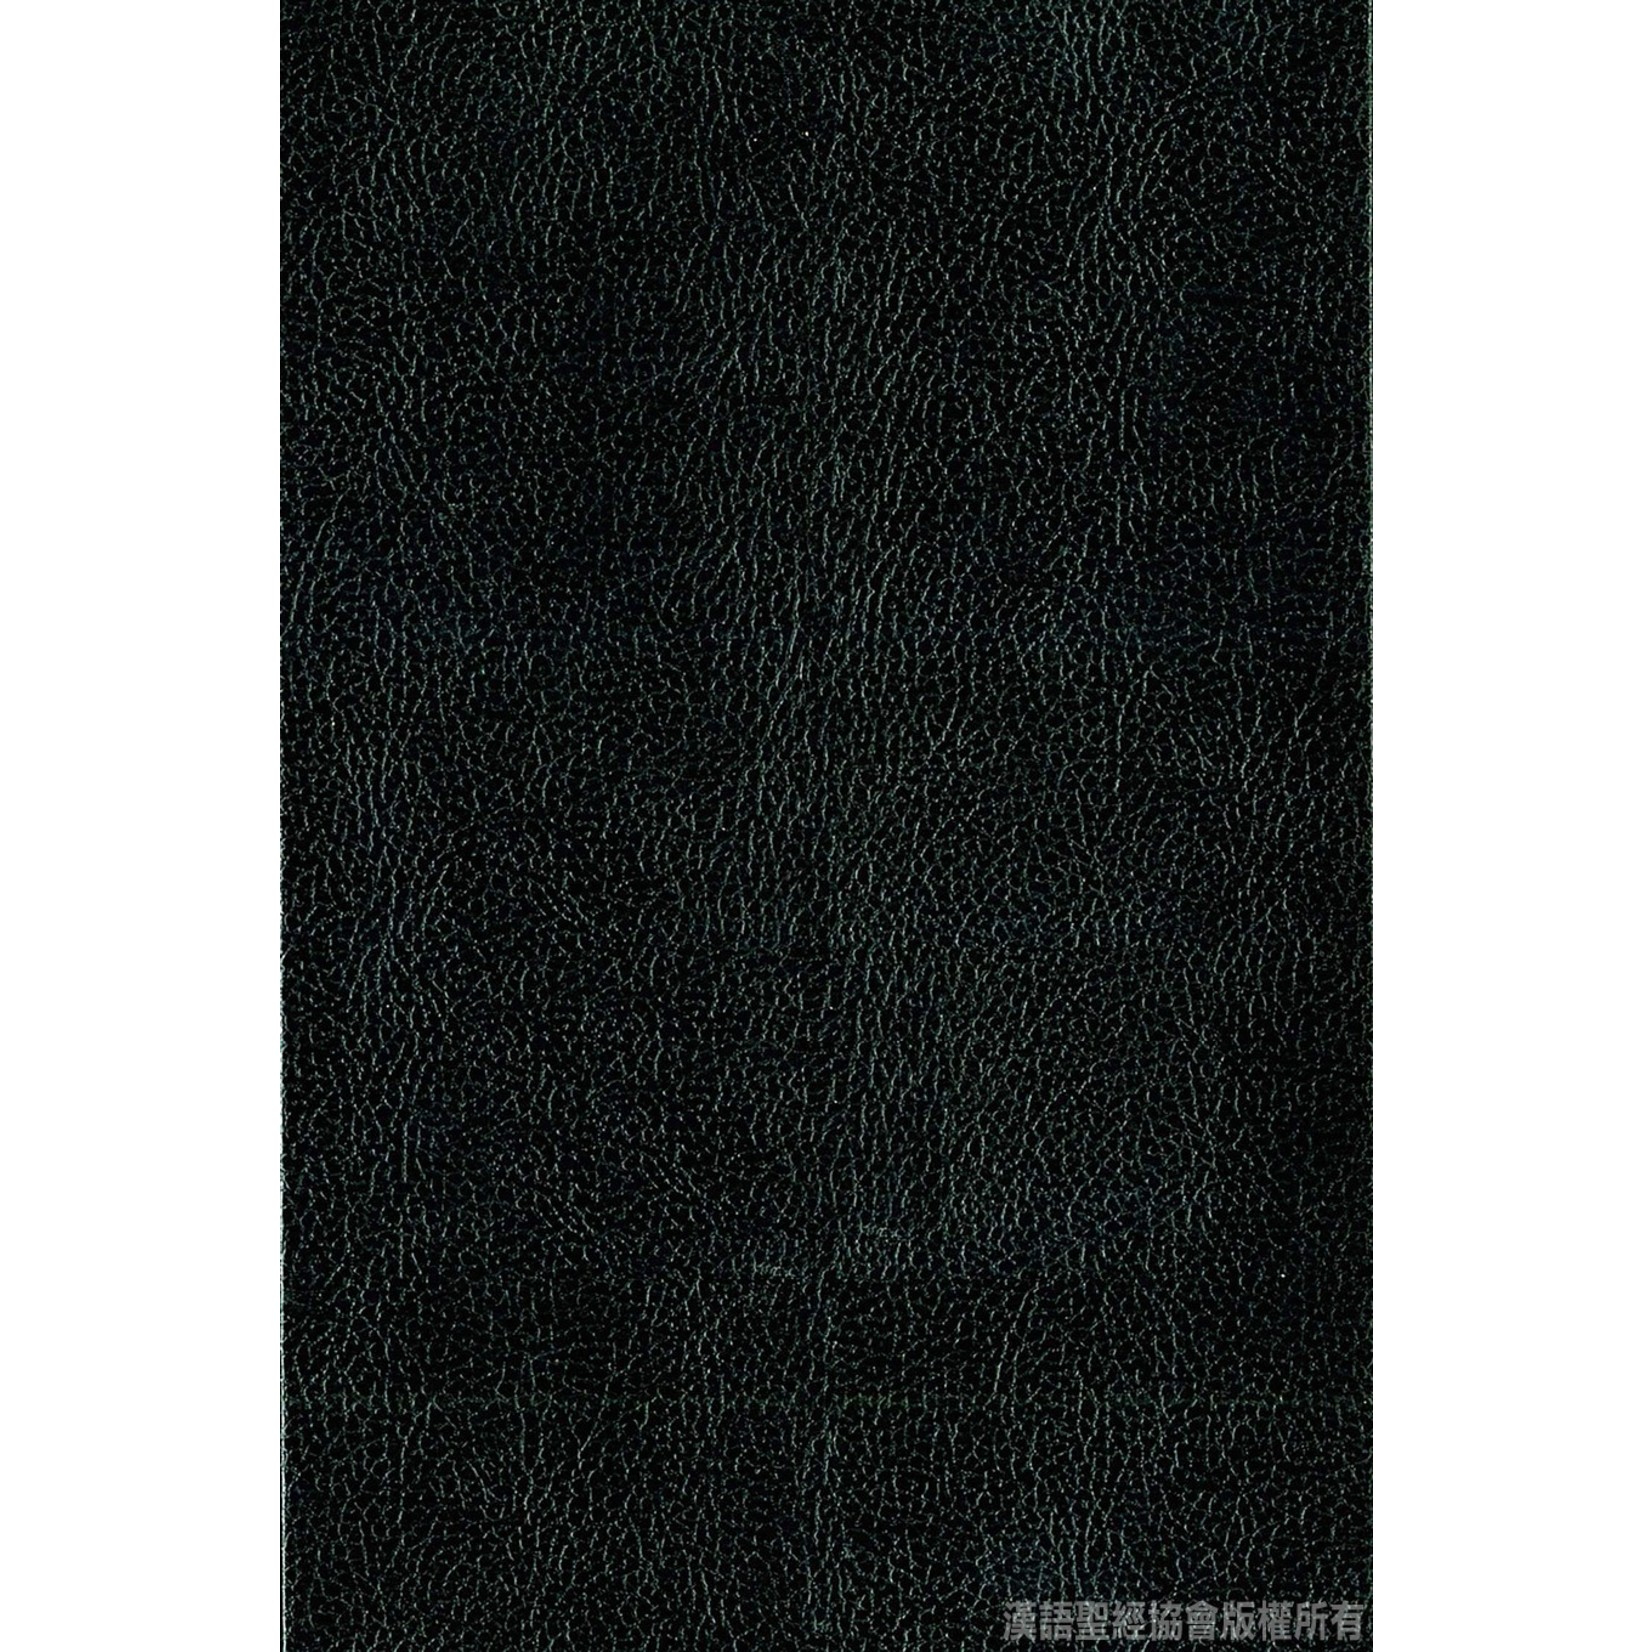 漢語聖經協會 Chinese Bible International 圣经．中英对照．和合本／NIV．黑色硬面．白边．轻便本 Union Version / NIV (Black Hardcover White Edge)